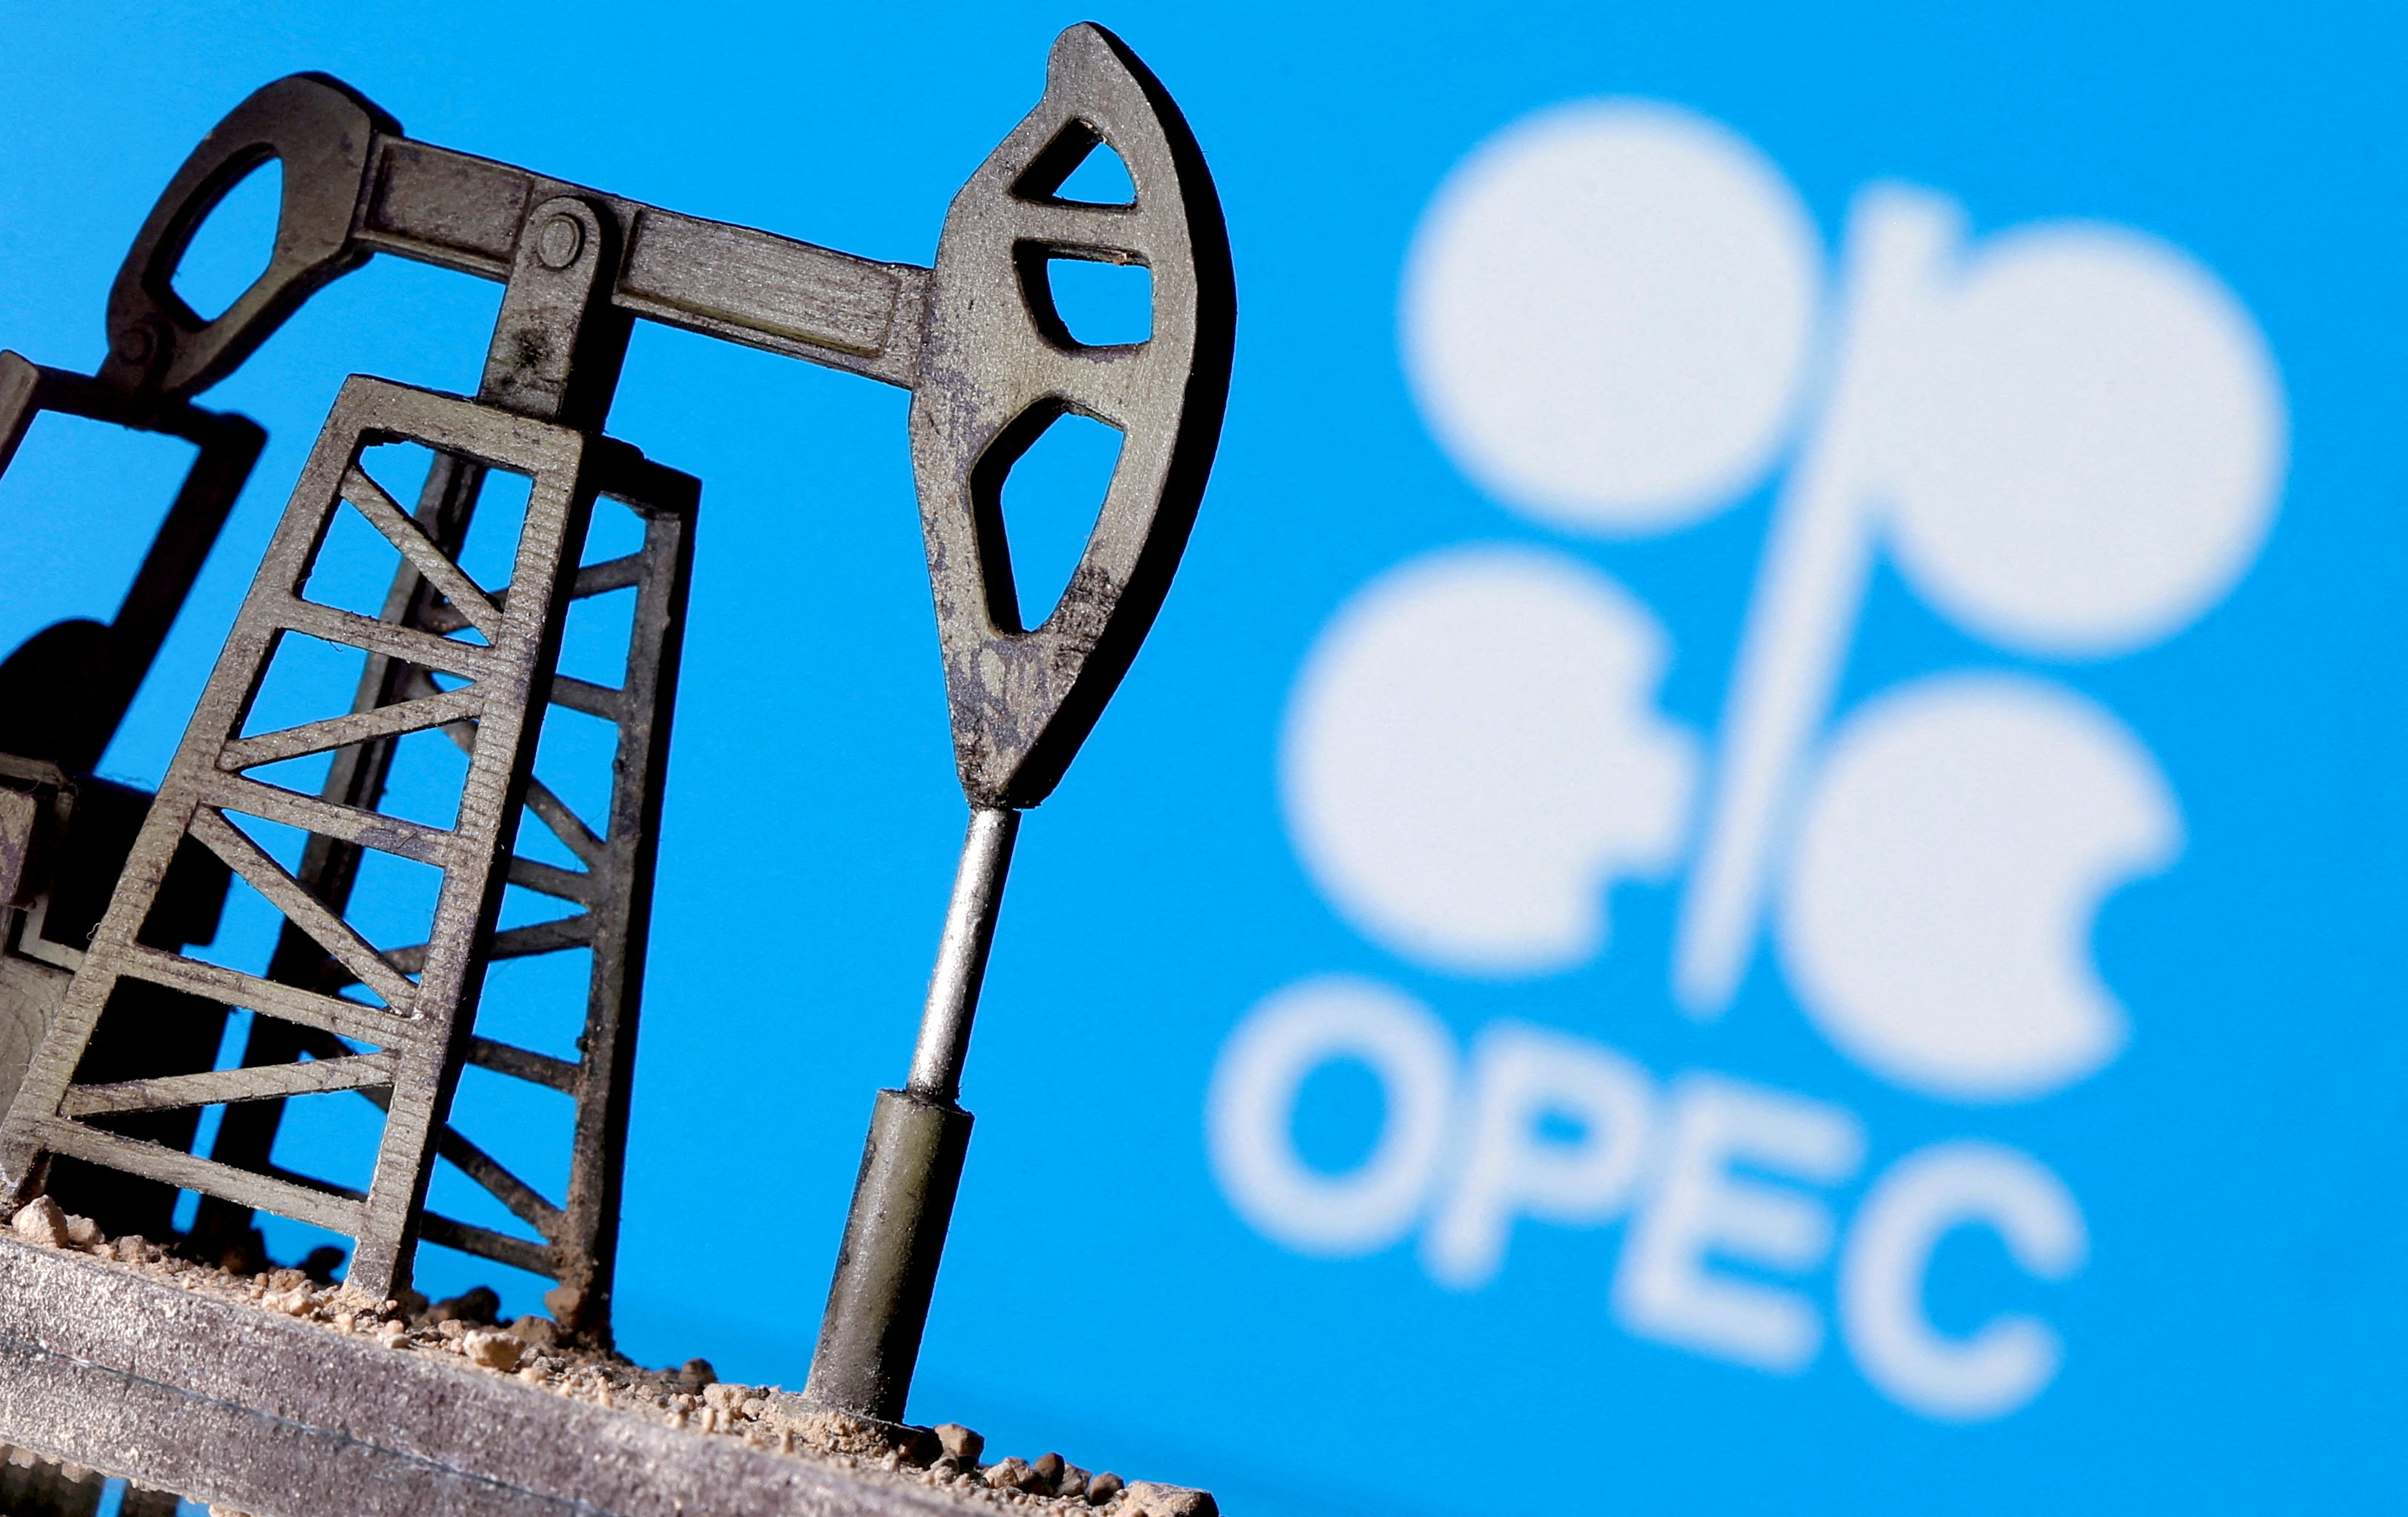 Pétrole : l'OPEP+ devrait rester prudente en dépit du risque d'un embargo européen contre la Russie